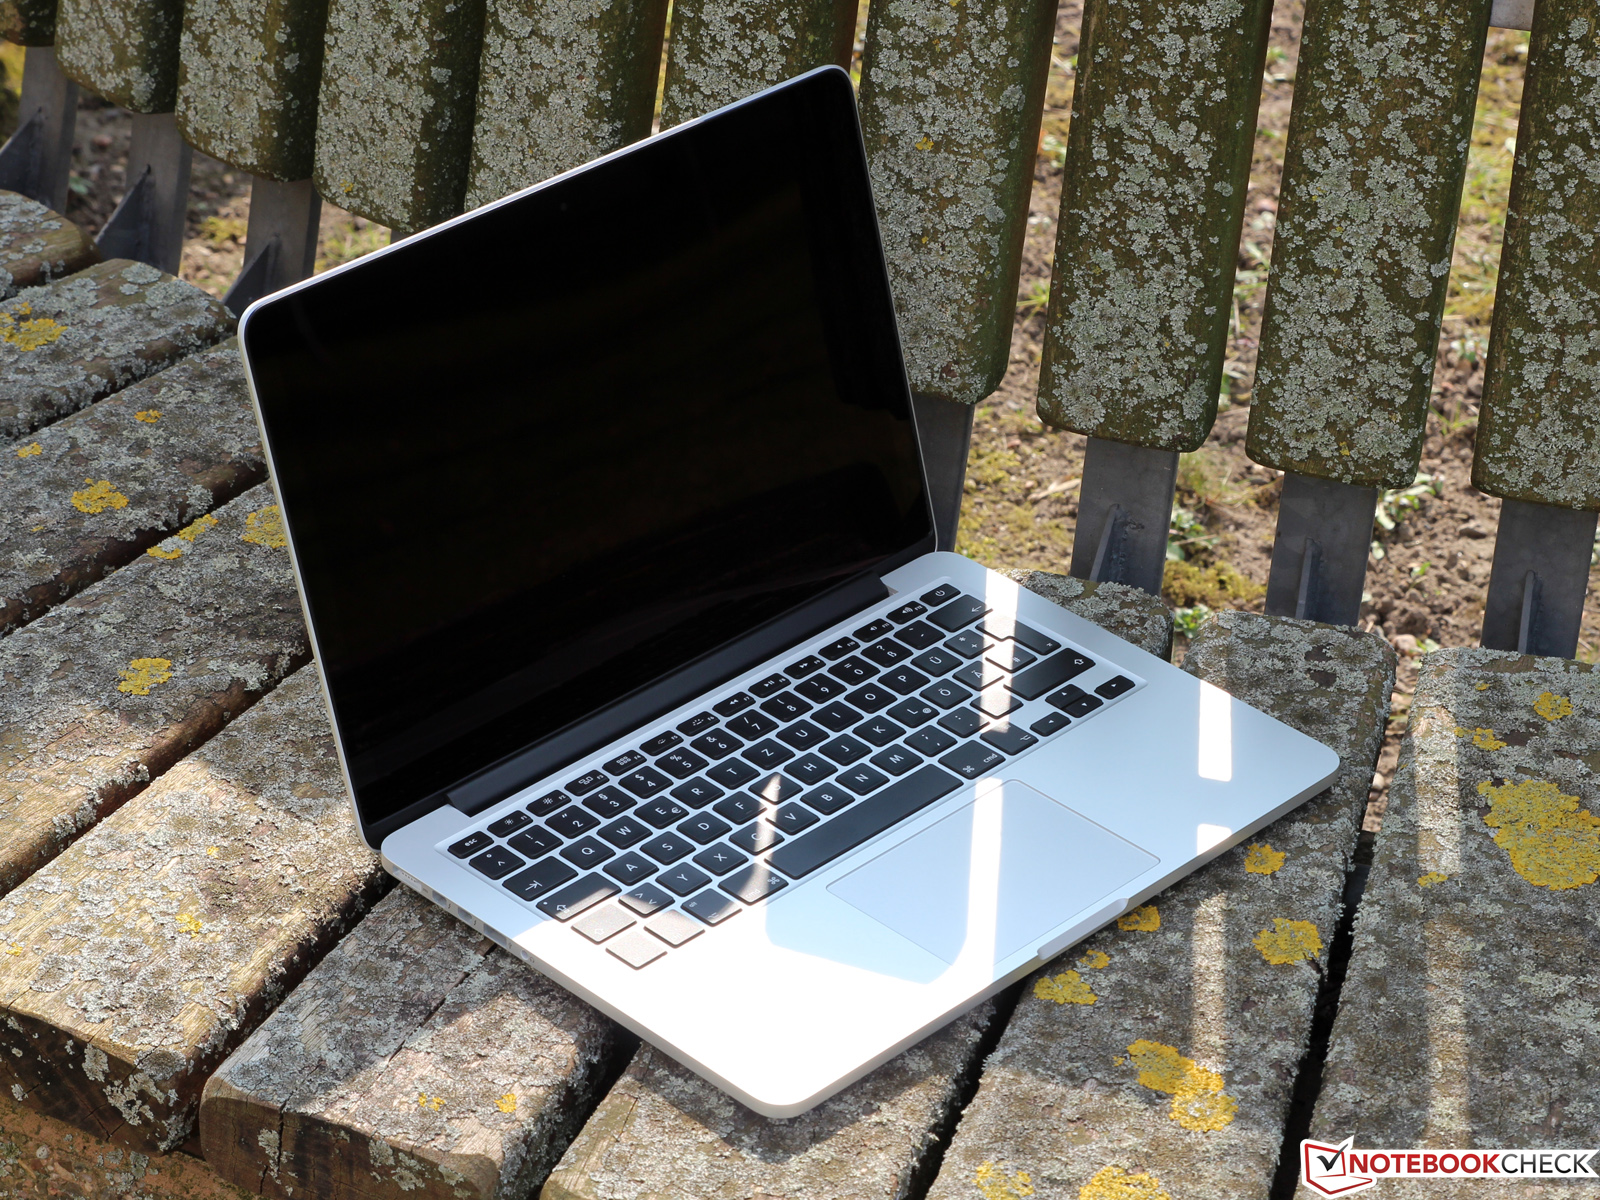 macbook pro 13 inch mid 2012 ram 1866